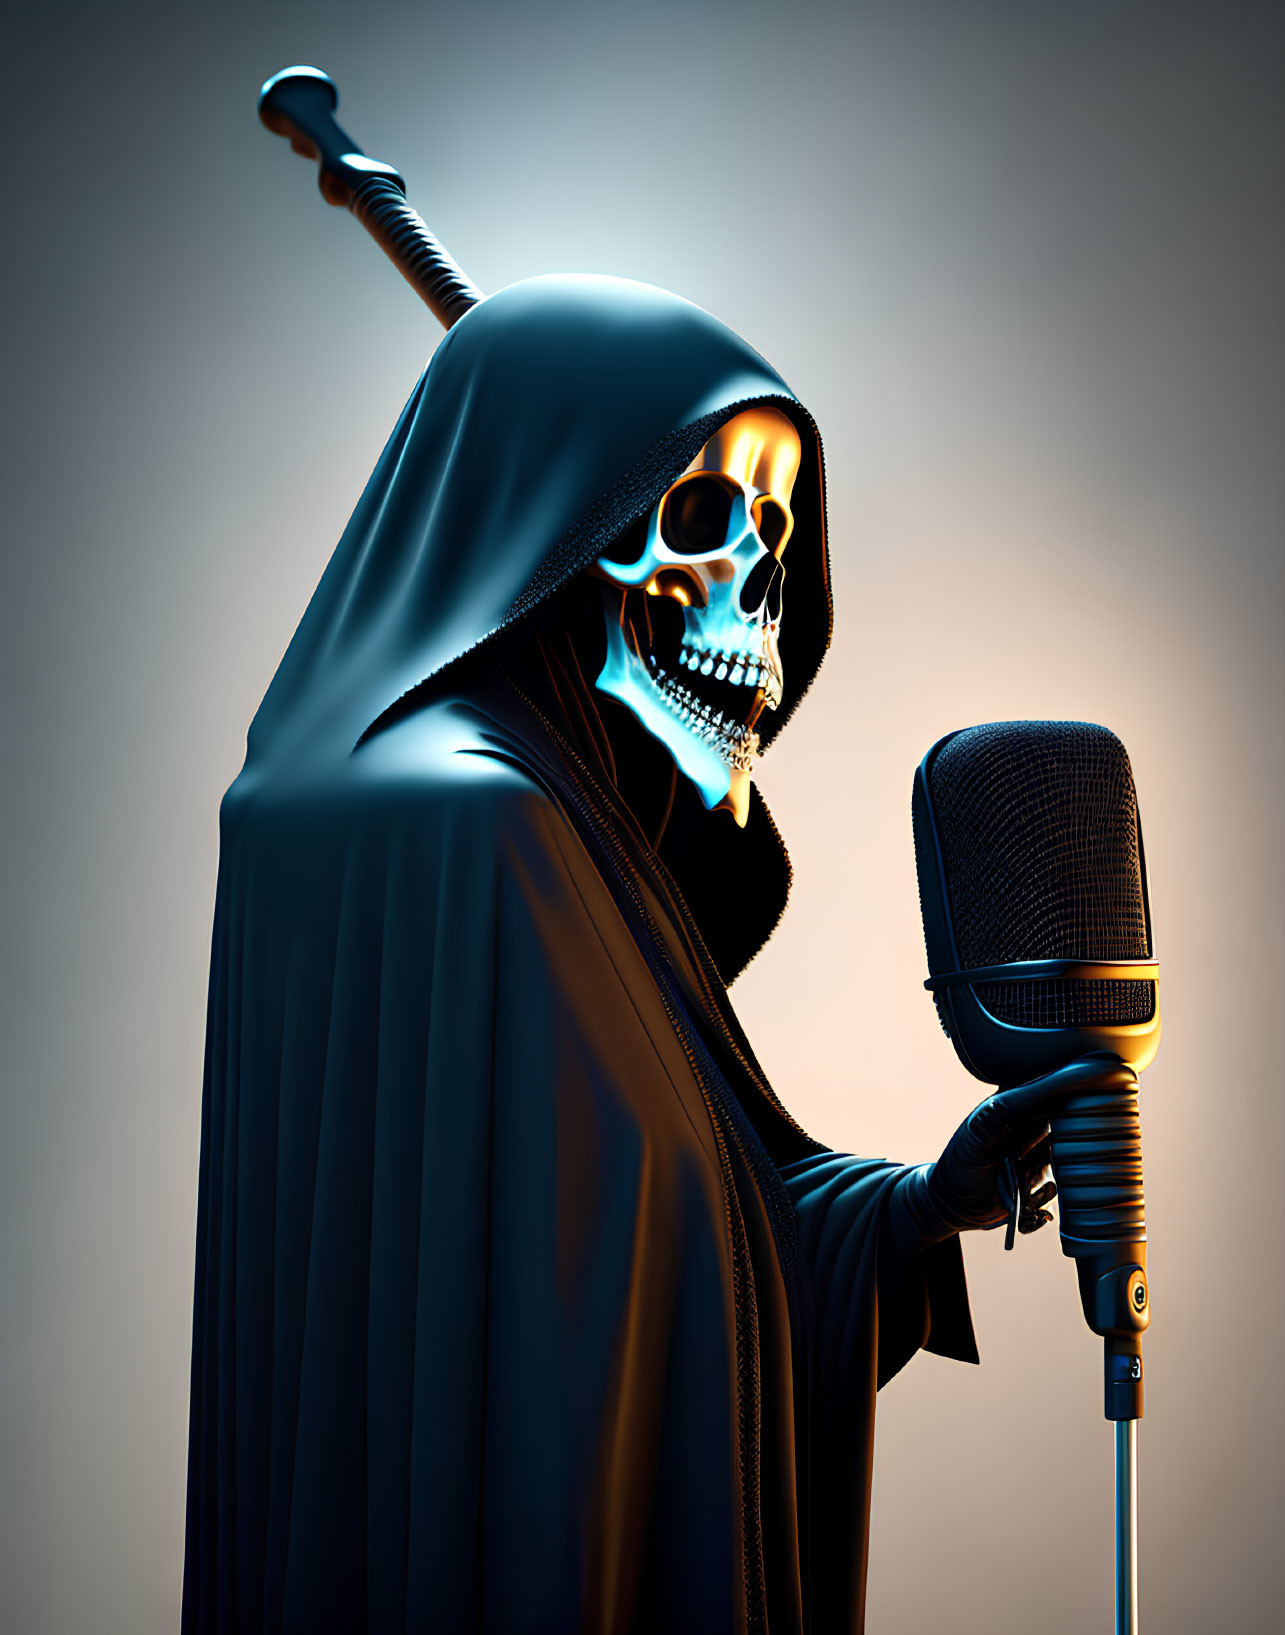 Skeleton in Hooded Cloak Holding Glowing Microphone